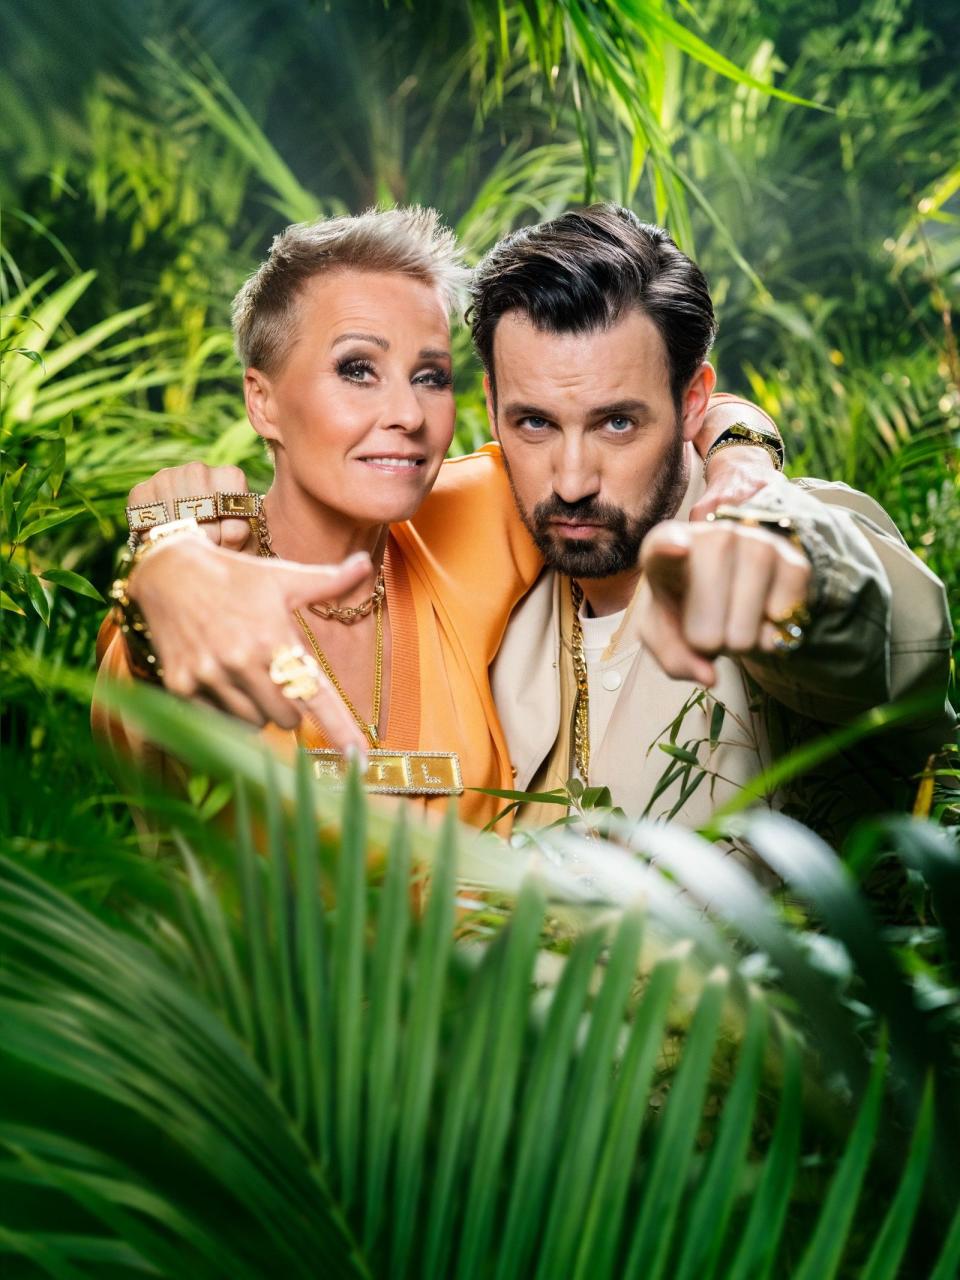 Sonja Zietlow und Jan Köppen führen erstmals gemeinsam durch den RTL-Klassiker. (Bild: RTL / Ruprecht Stempell)